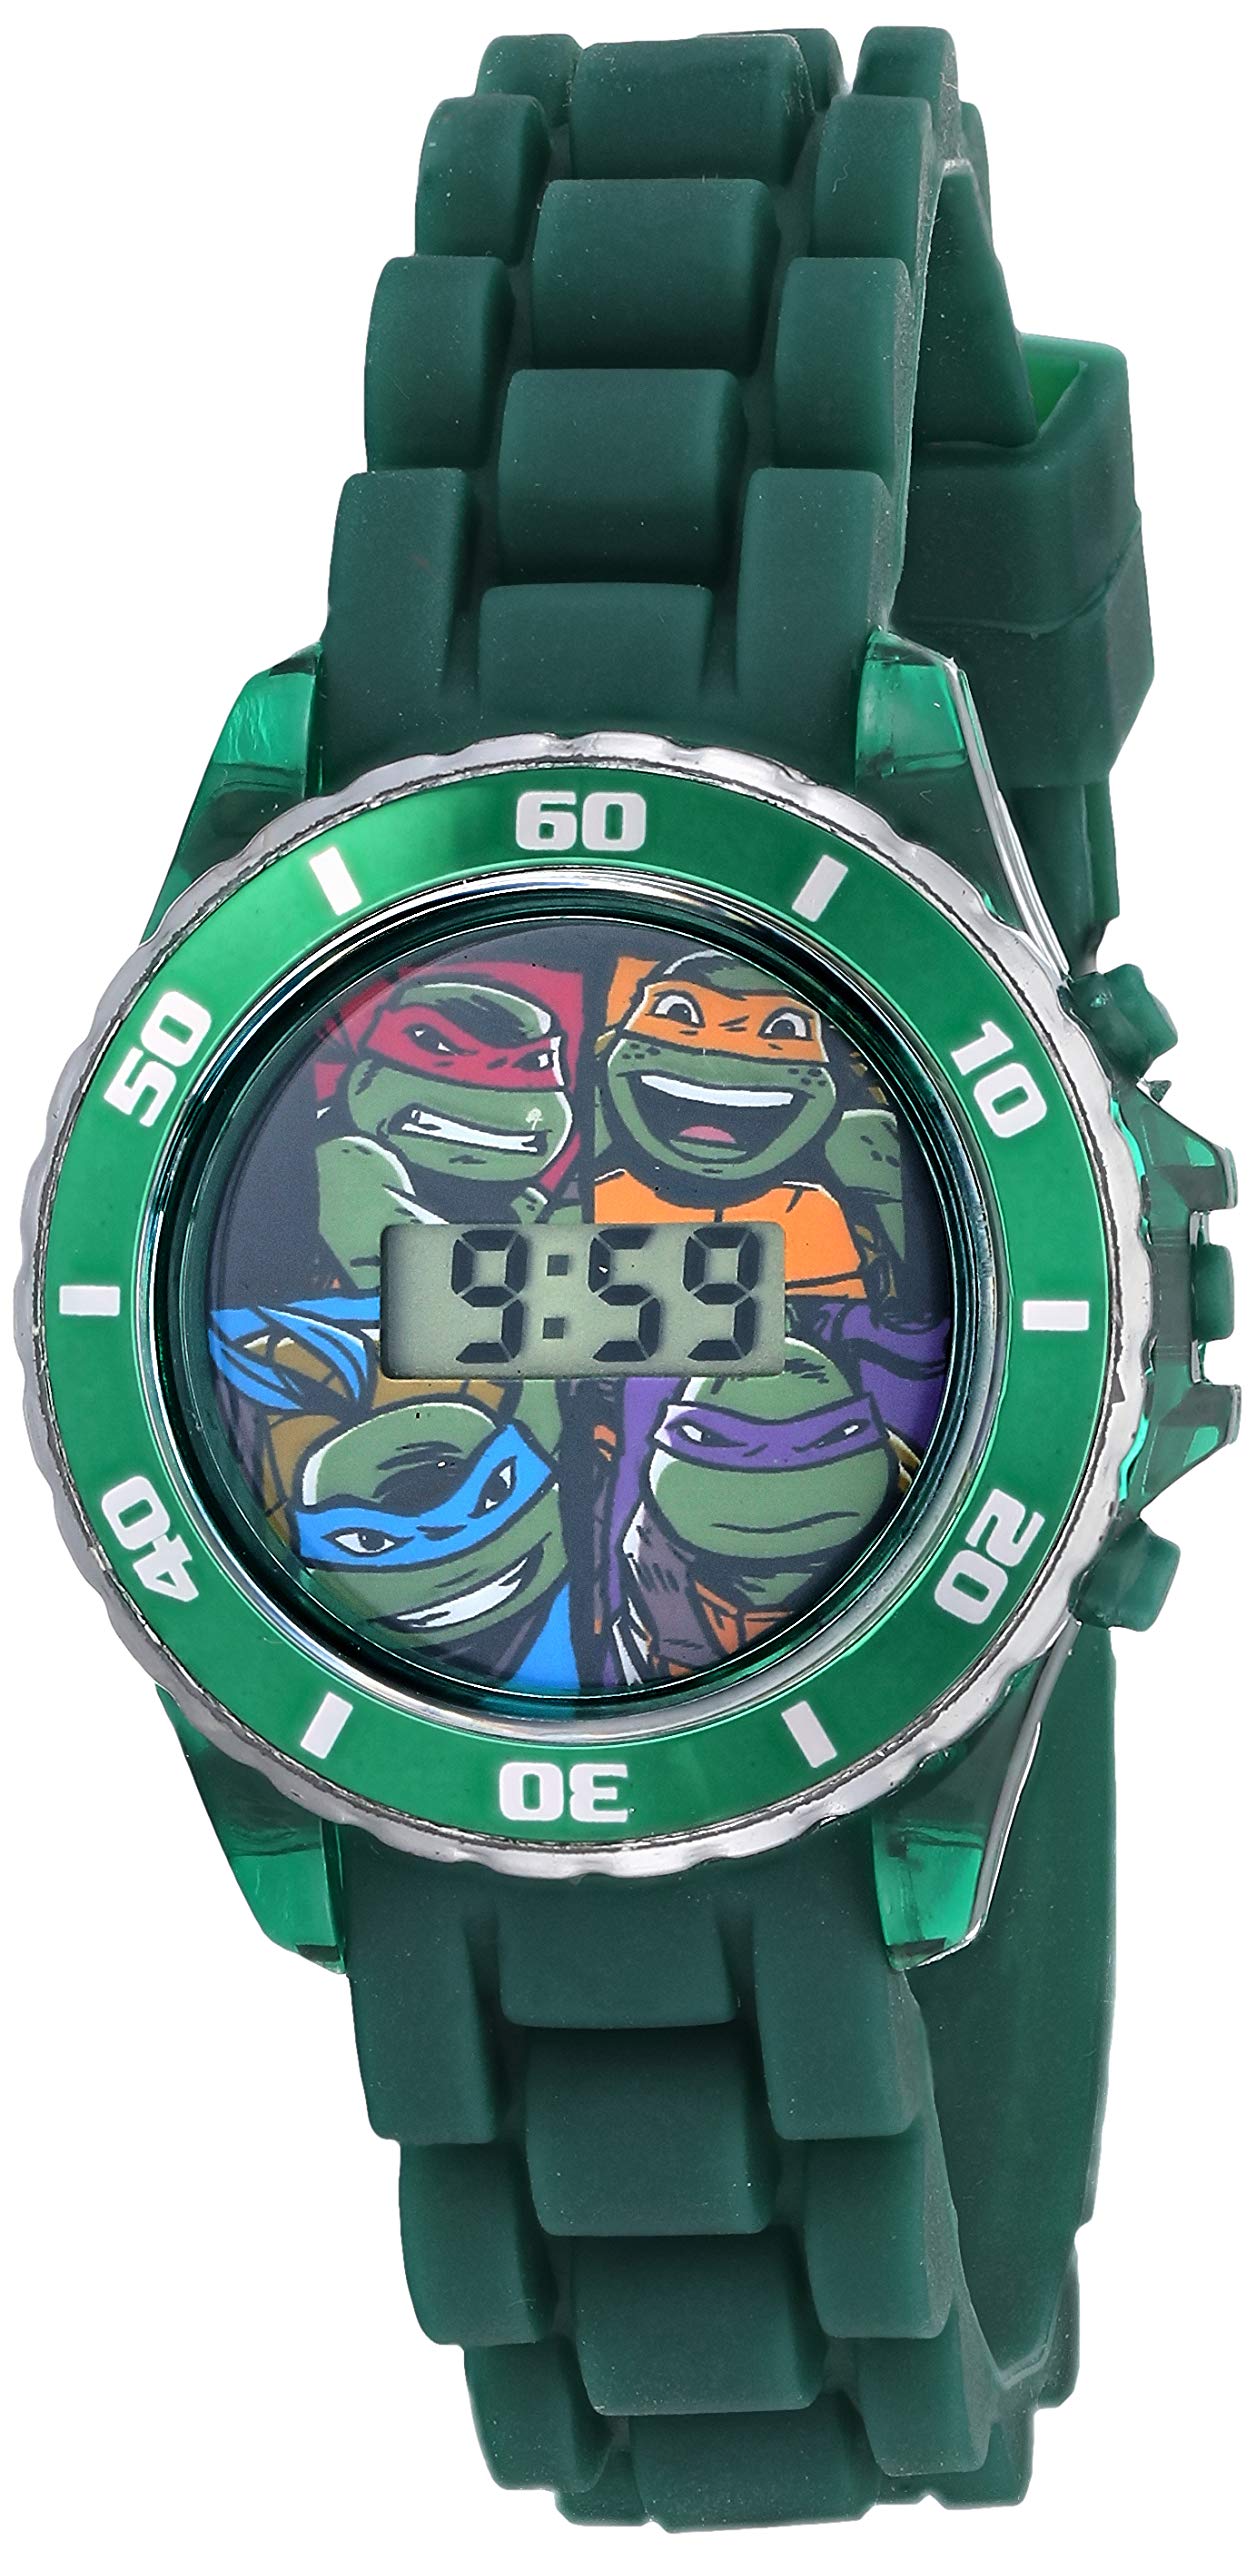 Accutime Ninja Turtles Kids' Digital Watch